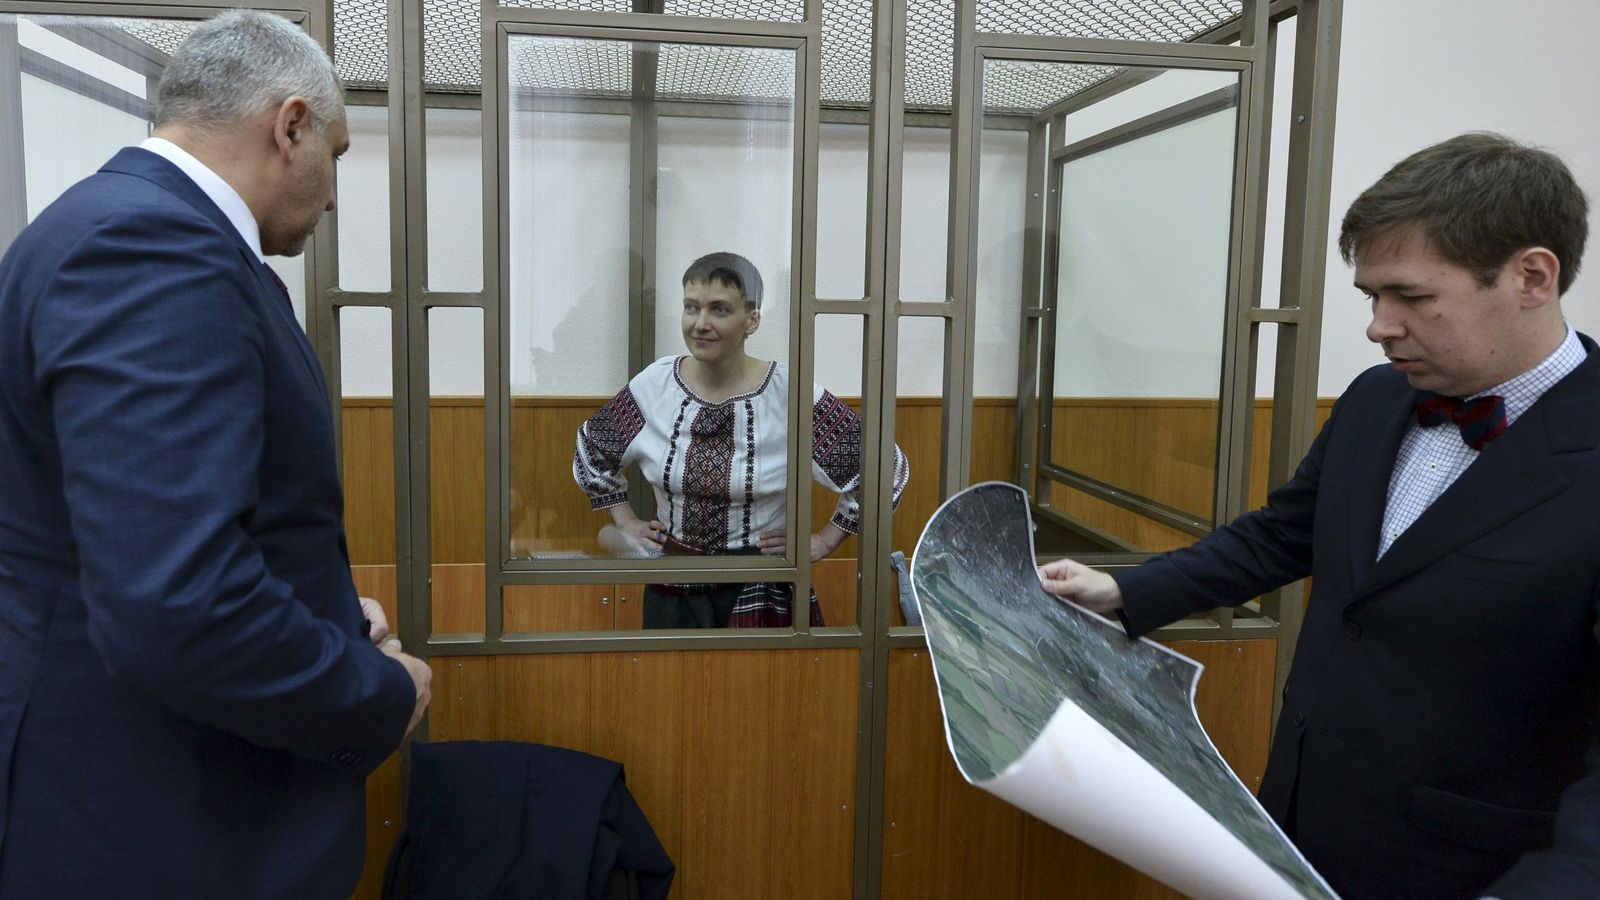 Foto: Nadia Savchenko escucha a sus abogados durante una sesión de su juicio en Rusia, en marzo de 2016 (Reuters)